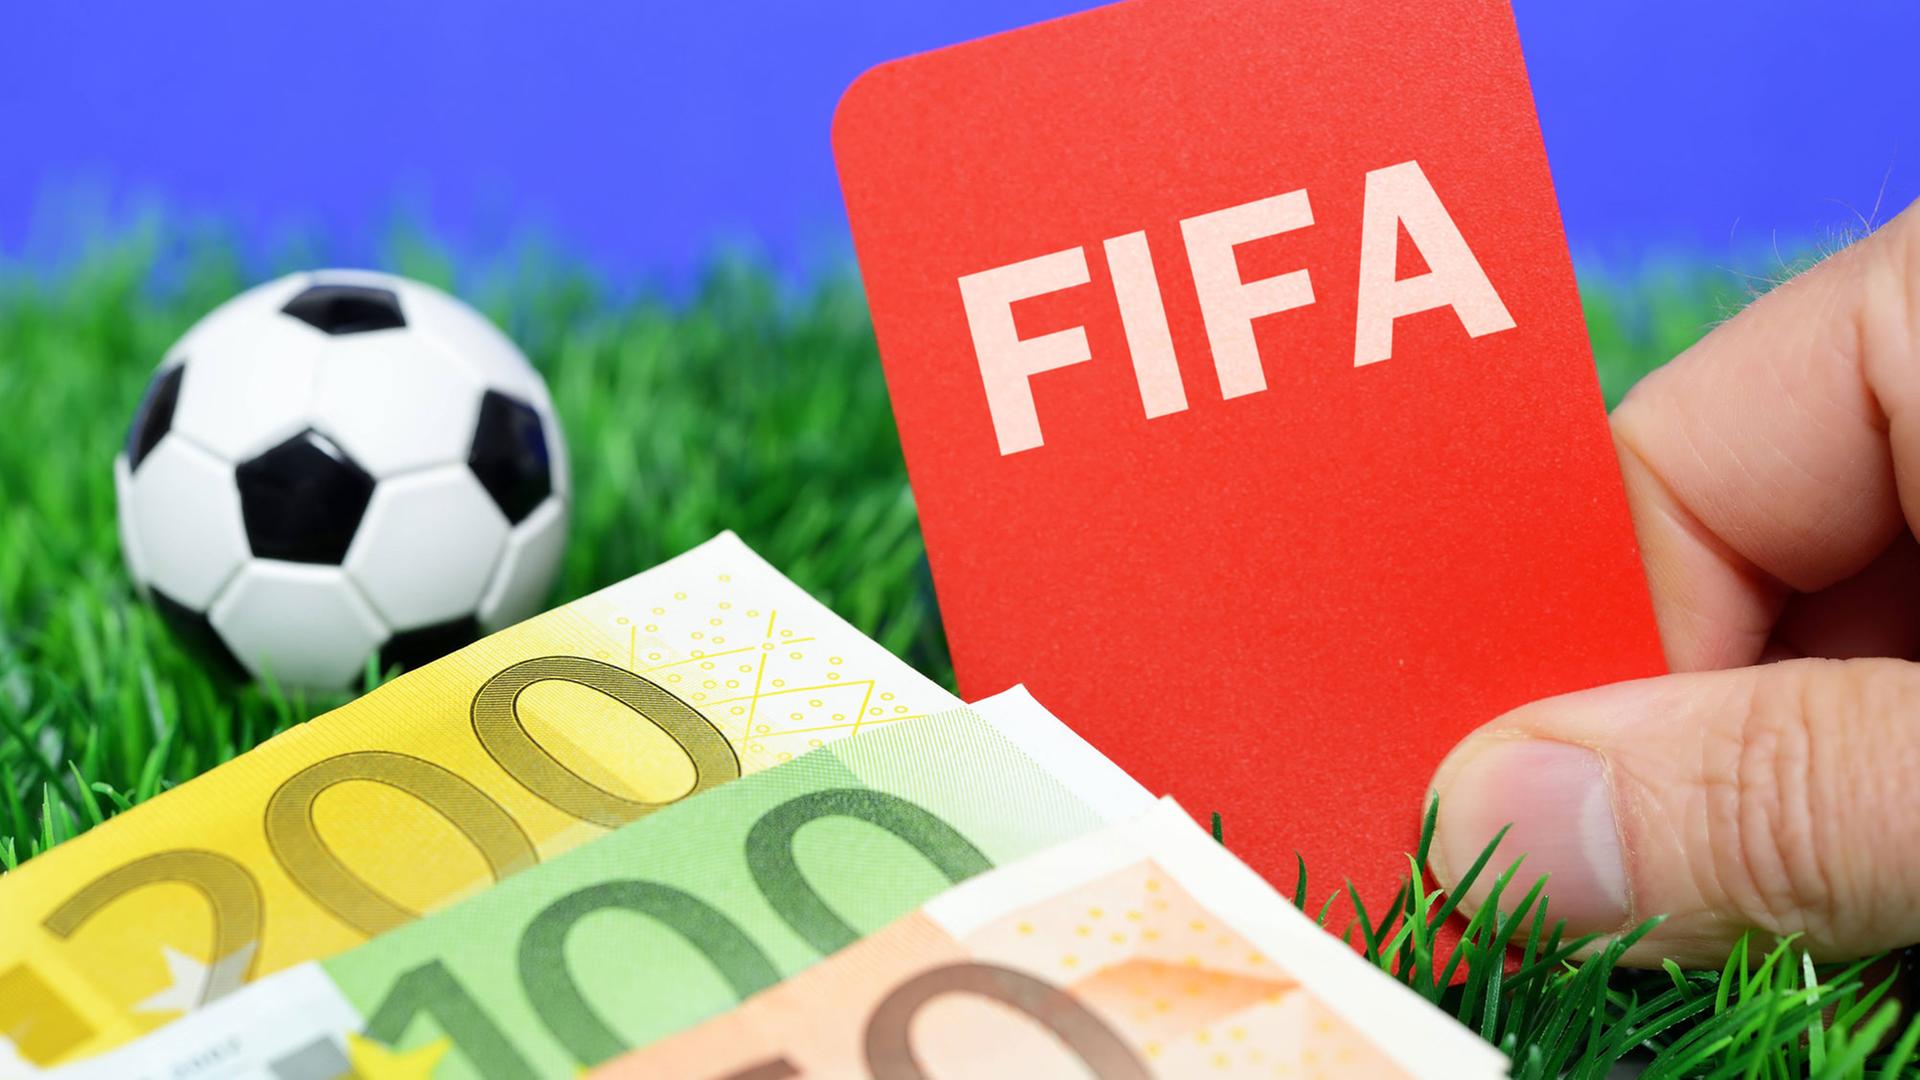 Ein Miniaturfußball auf einer Wiese neben einer Roten Karte mit FIFA-Schriftzug und mehreren Geldscheinen.